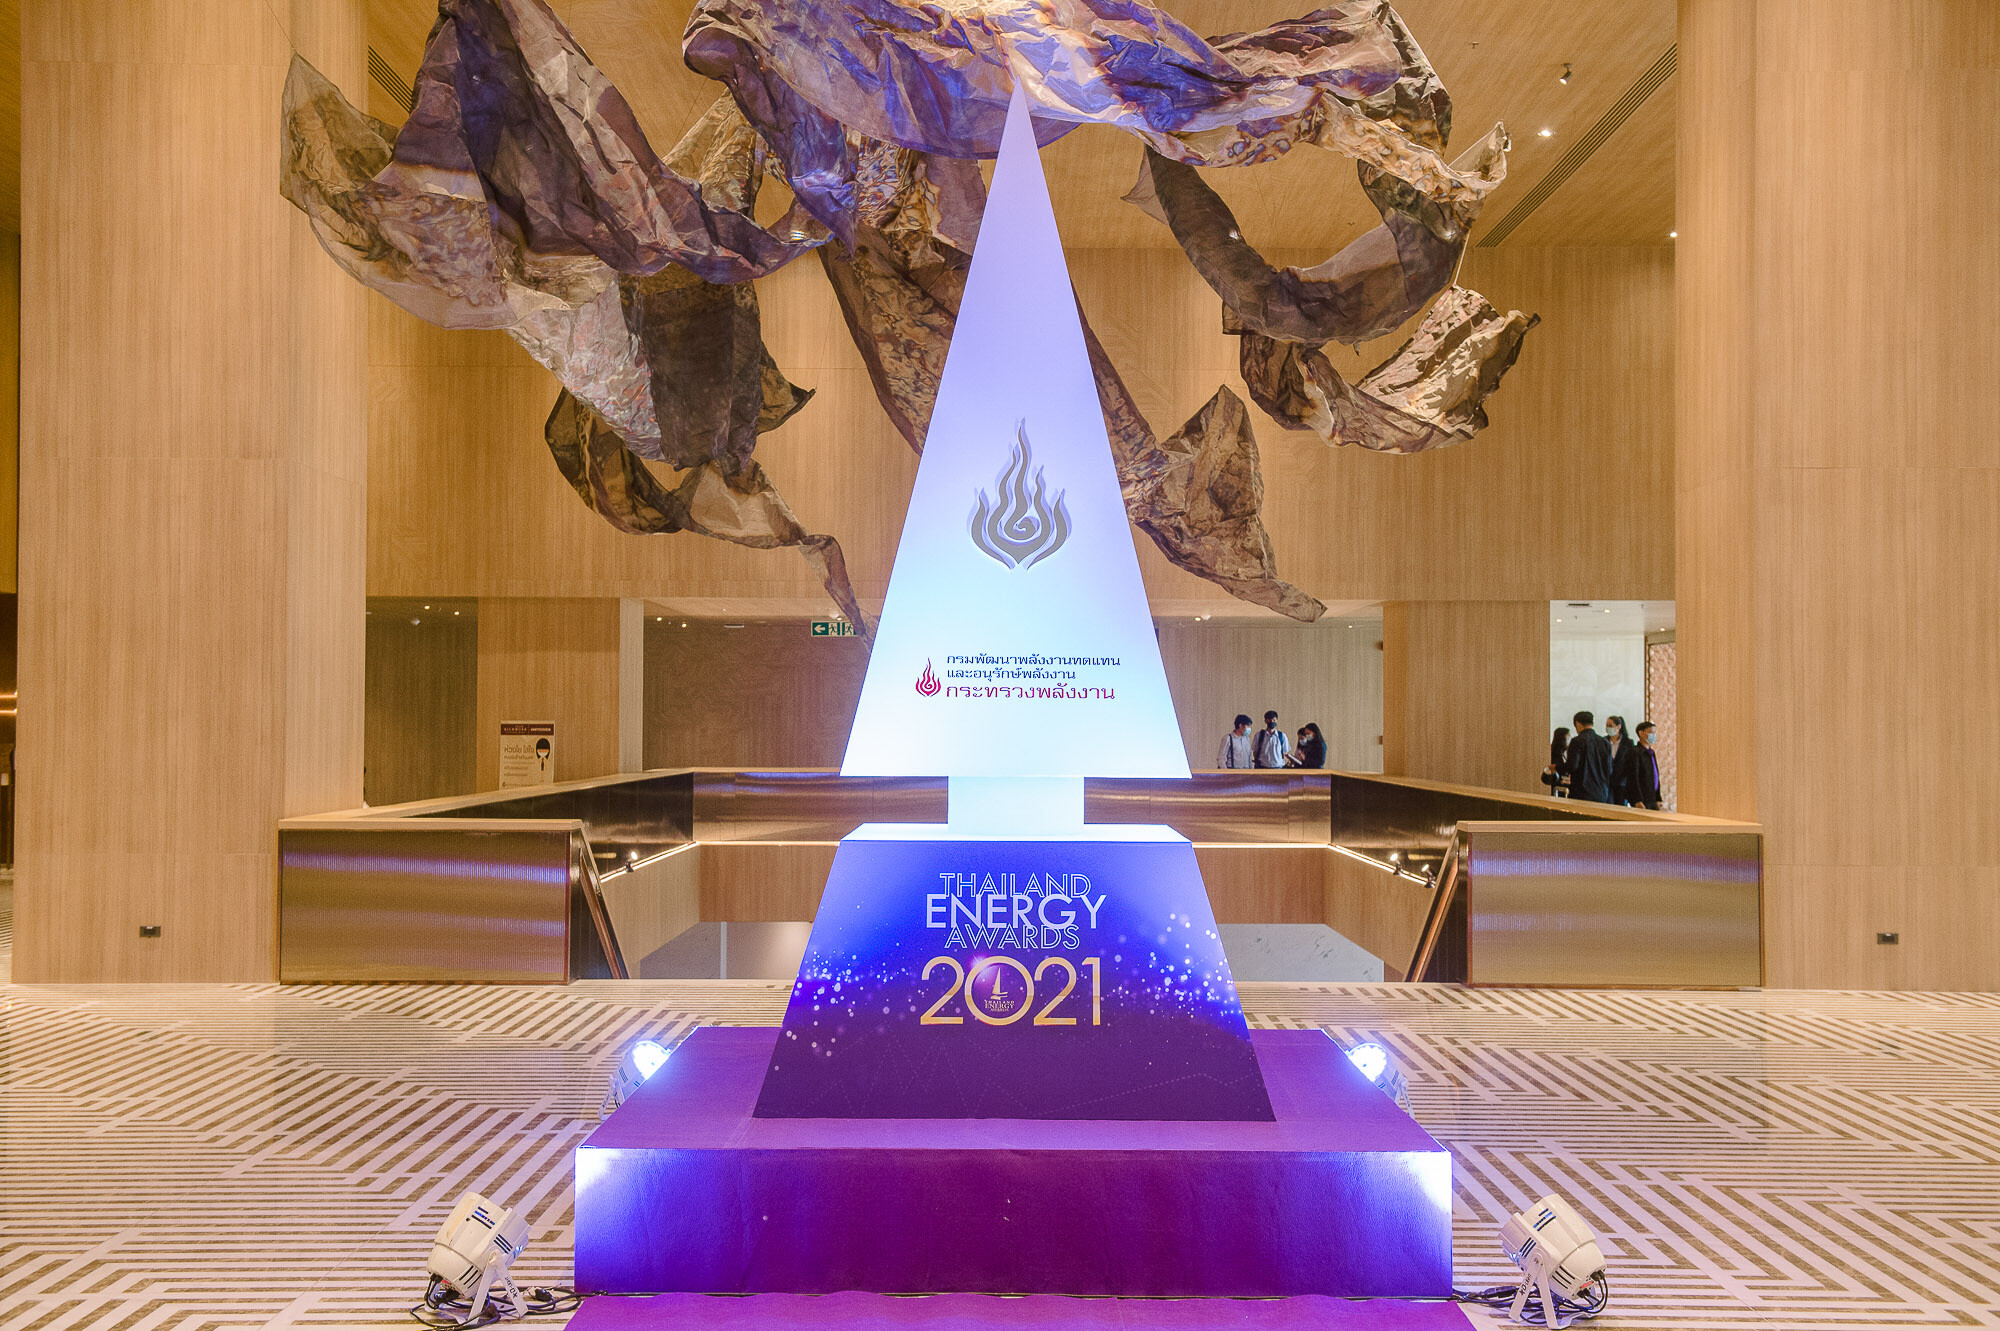 Thailand Energy Awards 2021 ก้าวสู่ทศวรรษที่ 3 ร่วมชิงสุดยอดรางวัลด้านพลังงานไทย เฟ้นหาตัวแทนชิงชัยระดับอาเซียน